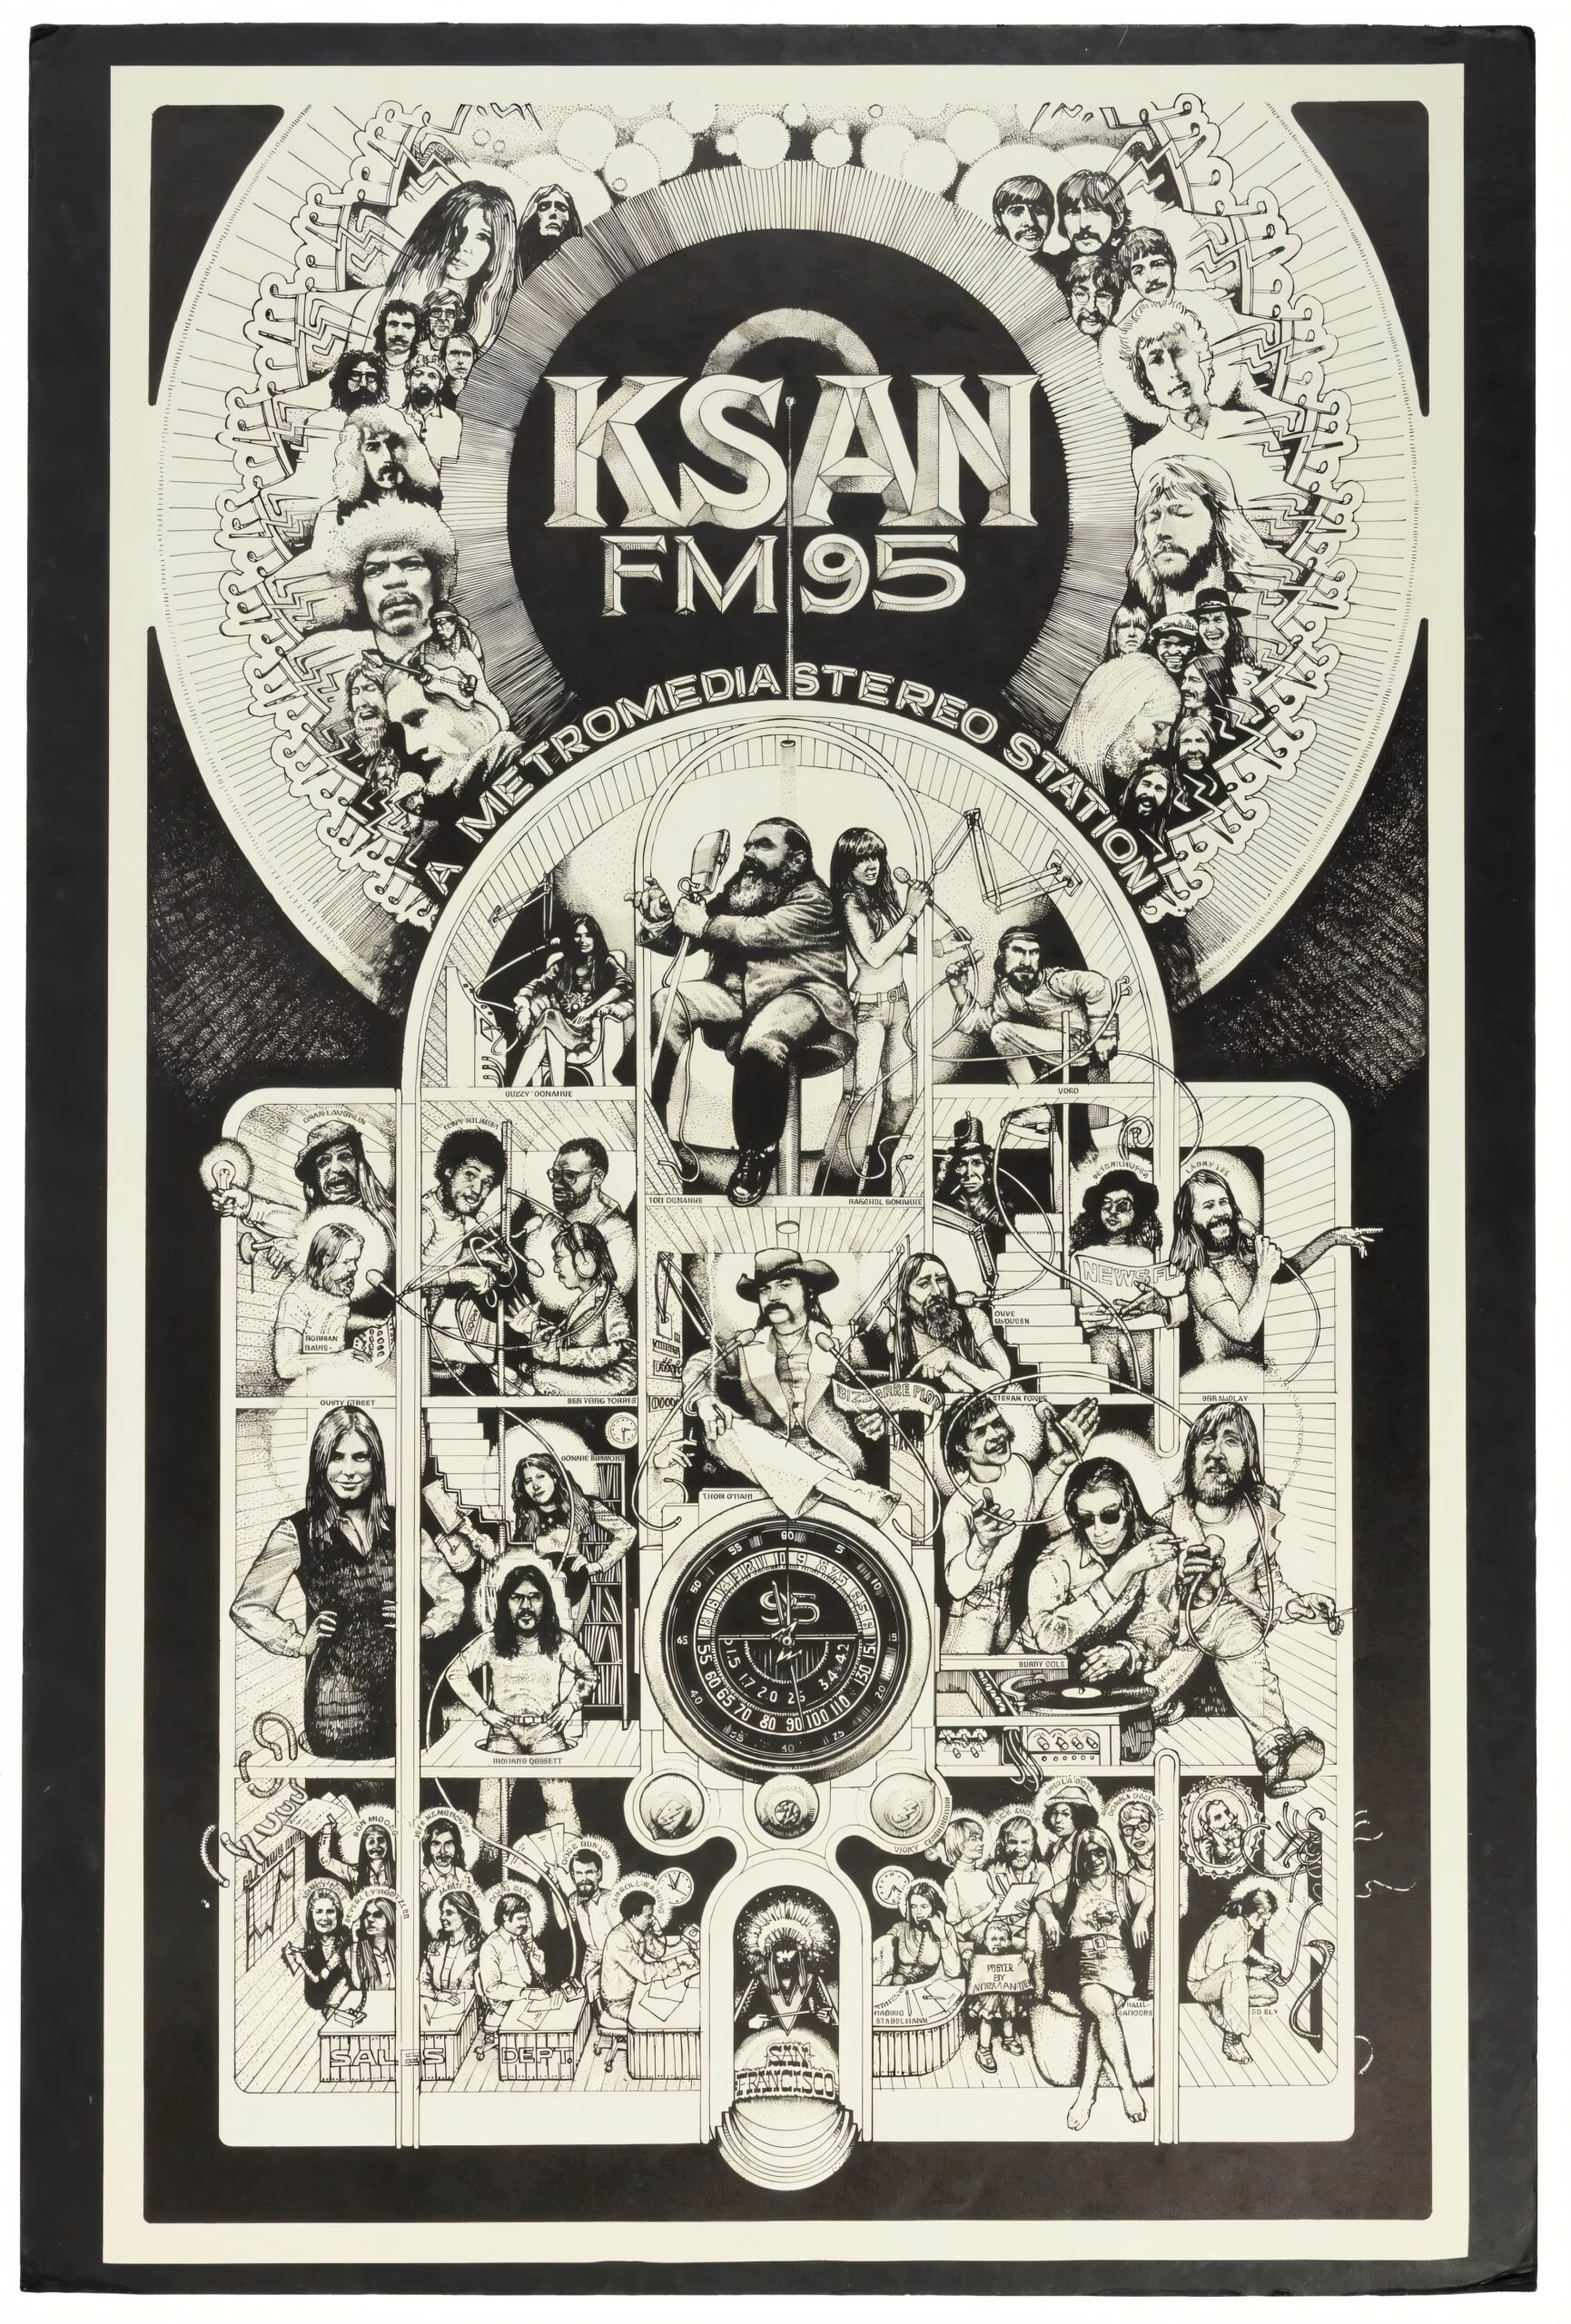 KSAN FM 95 by Norman Orr